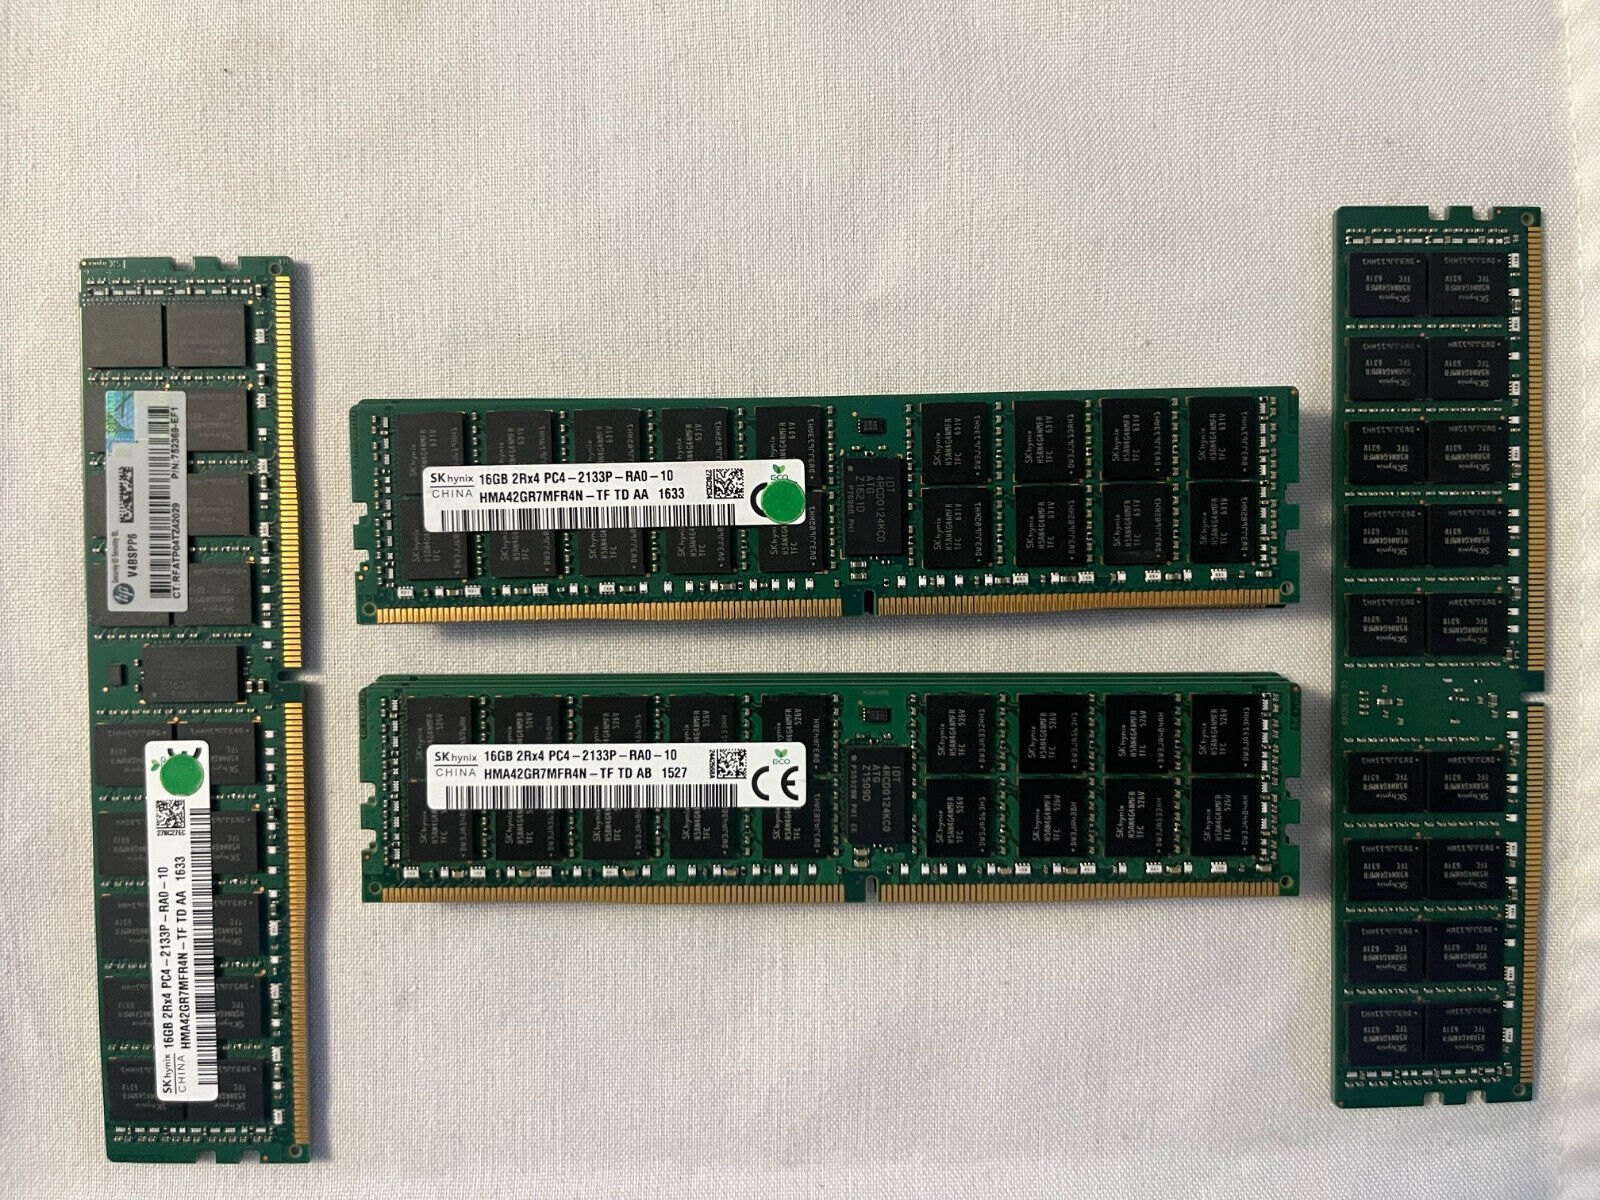 SK Hynix 16GB (1X16GB) 2Rx4 PC4 (DDR4) 2133P-RA0-10 HMA42GR7MFR4N-TF-TD